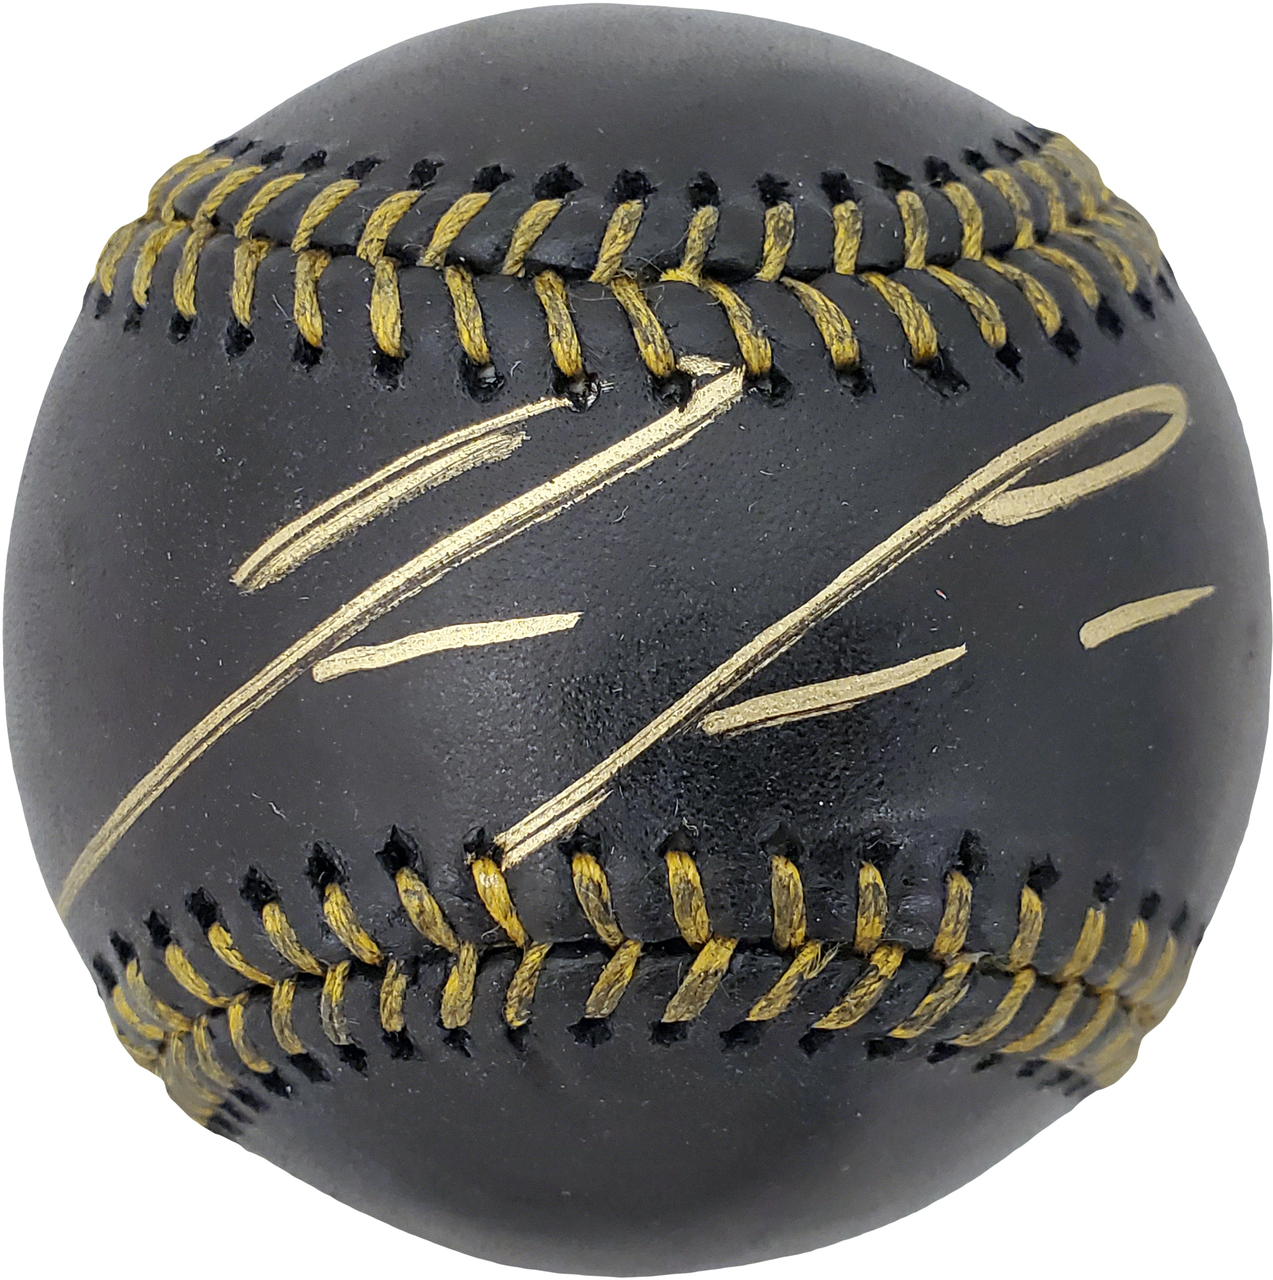 Ronald Acuna Jr Autographed Atlanta Braves White Nike Baseball Jersey - JSA  COA